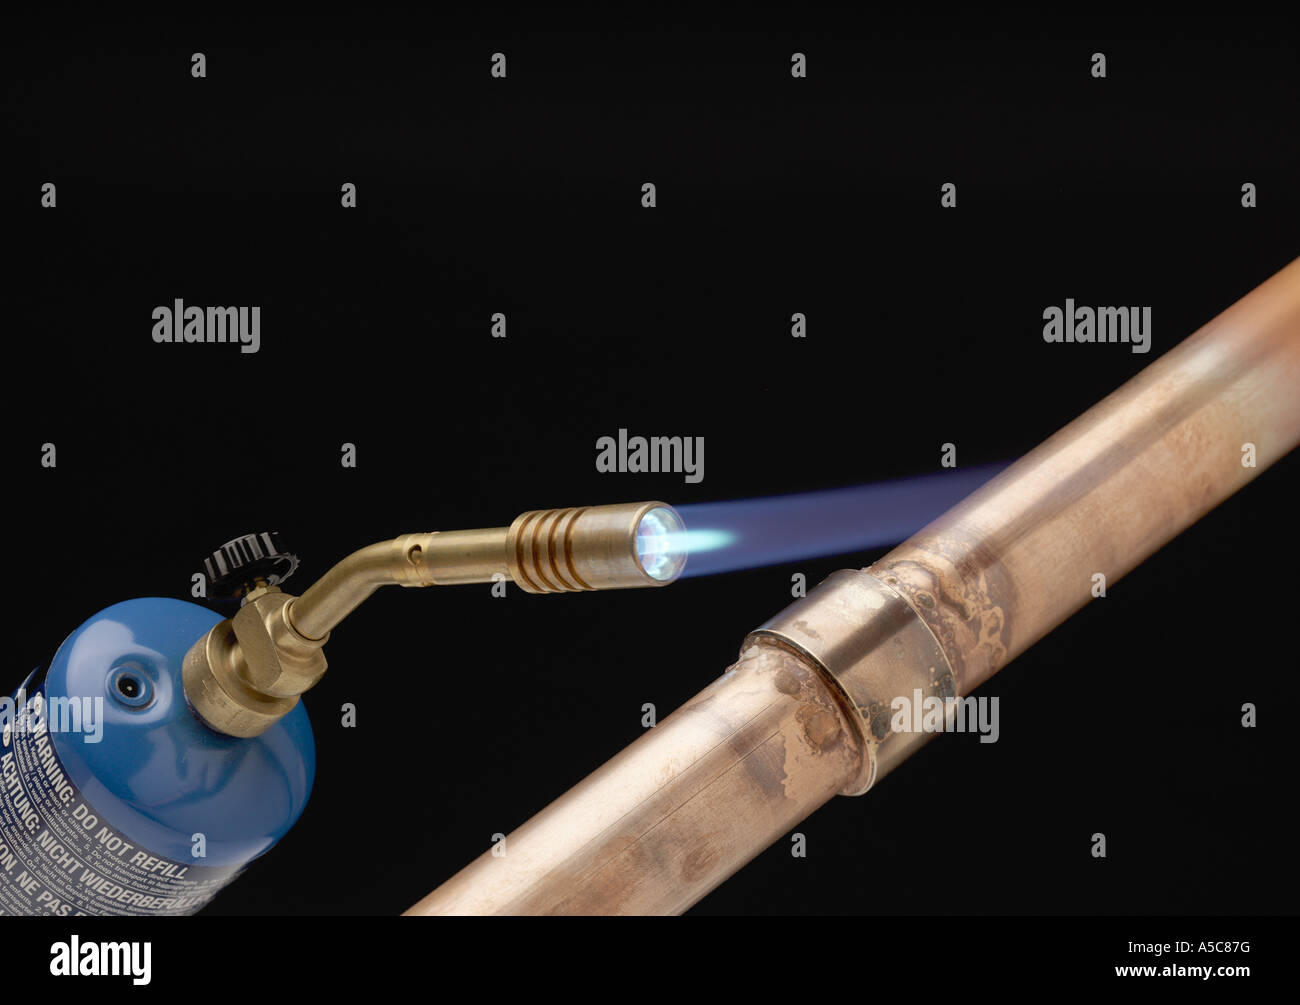 Gas-Lötlampe erhitzen ein Yorkshire-Montage auf einem 22mm Kupfer Rohr  Stockfotografie - Alamy